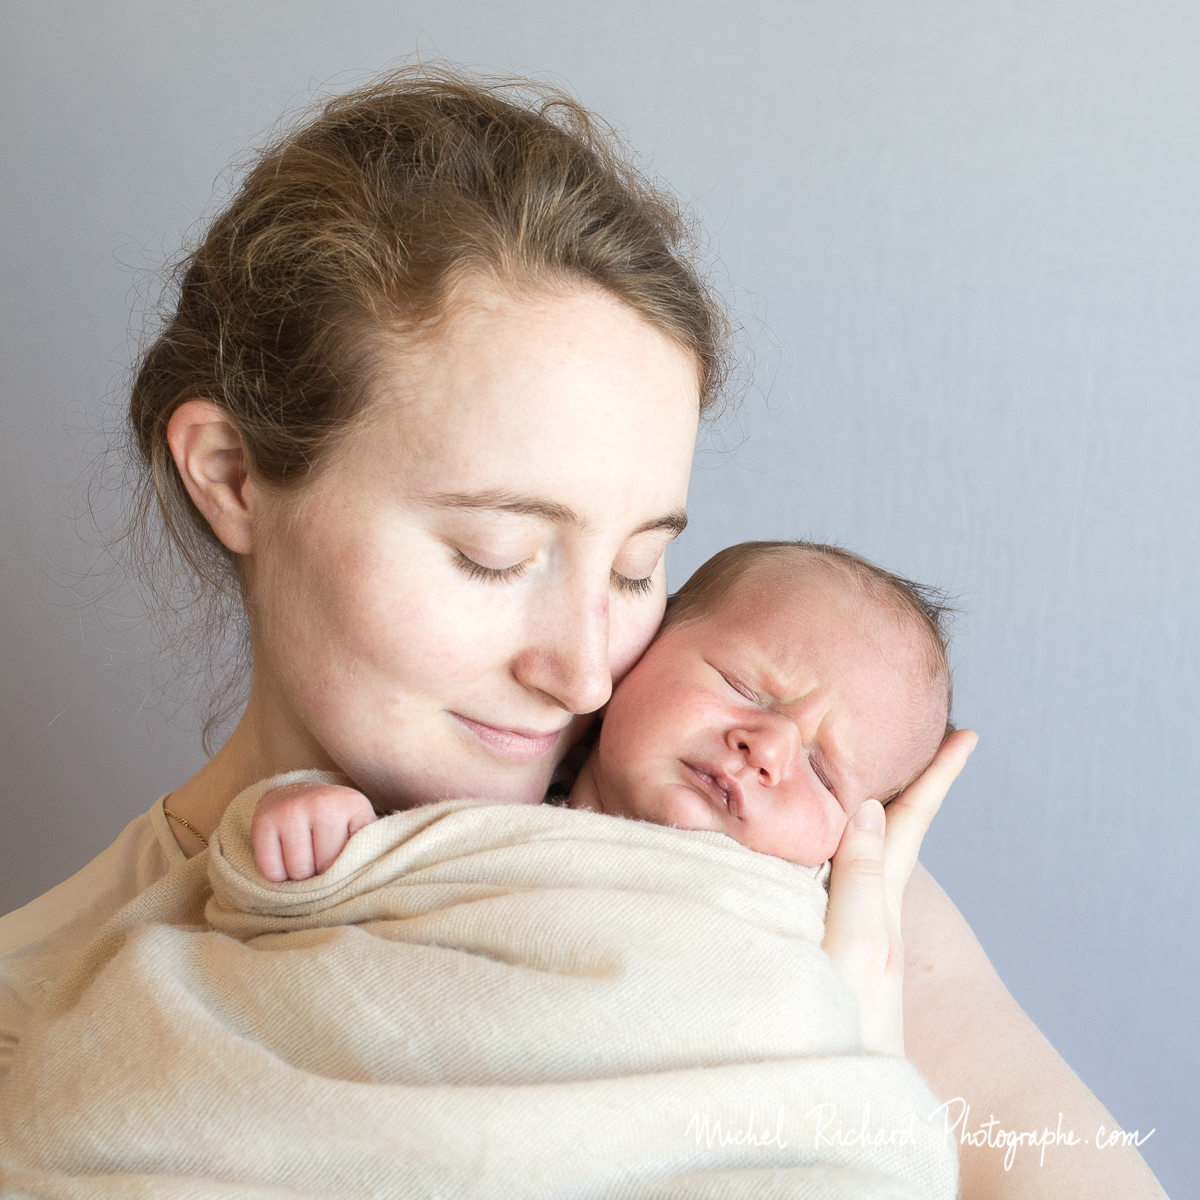 tendresse de Maman avec bébé nouveau-né dans ses bras, les yeux fermés